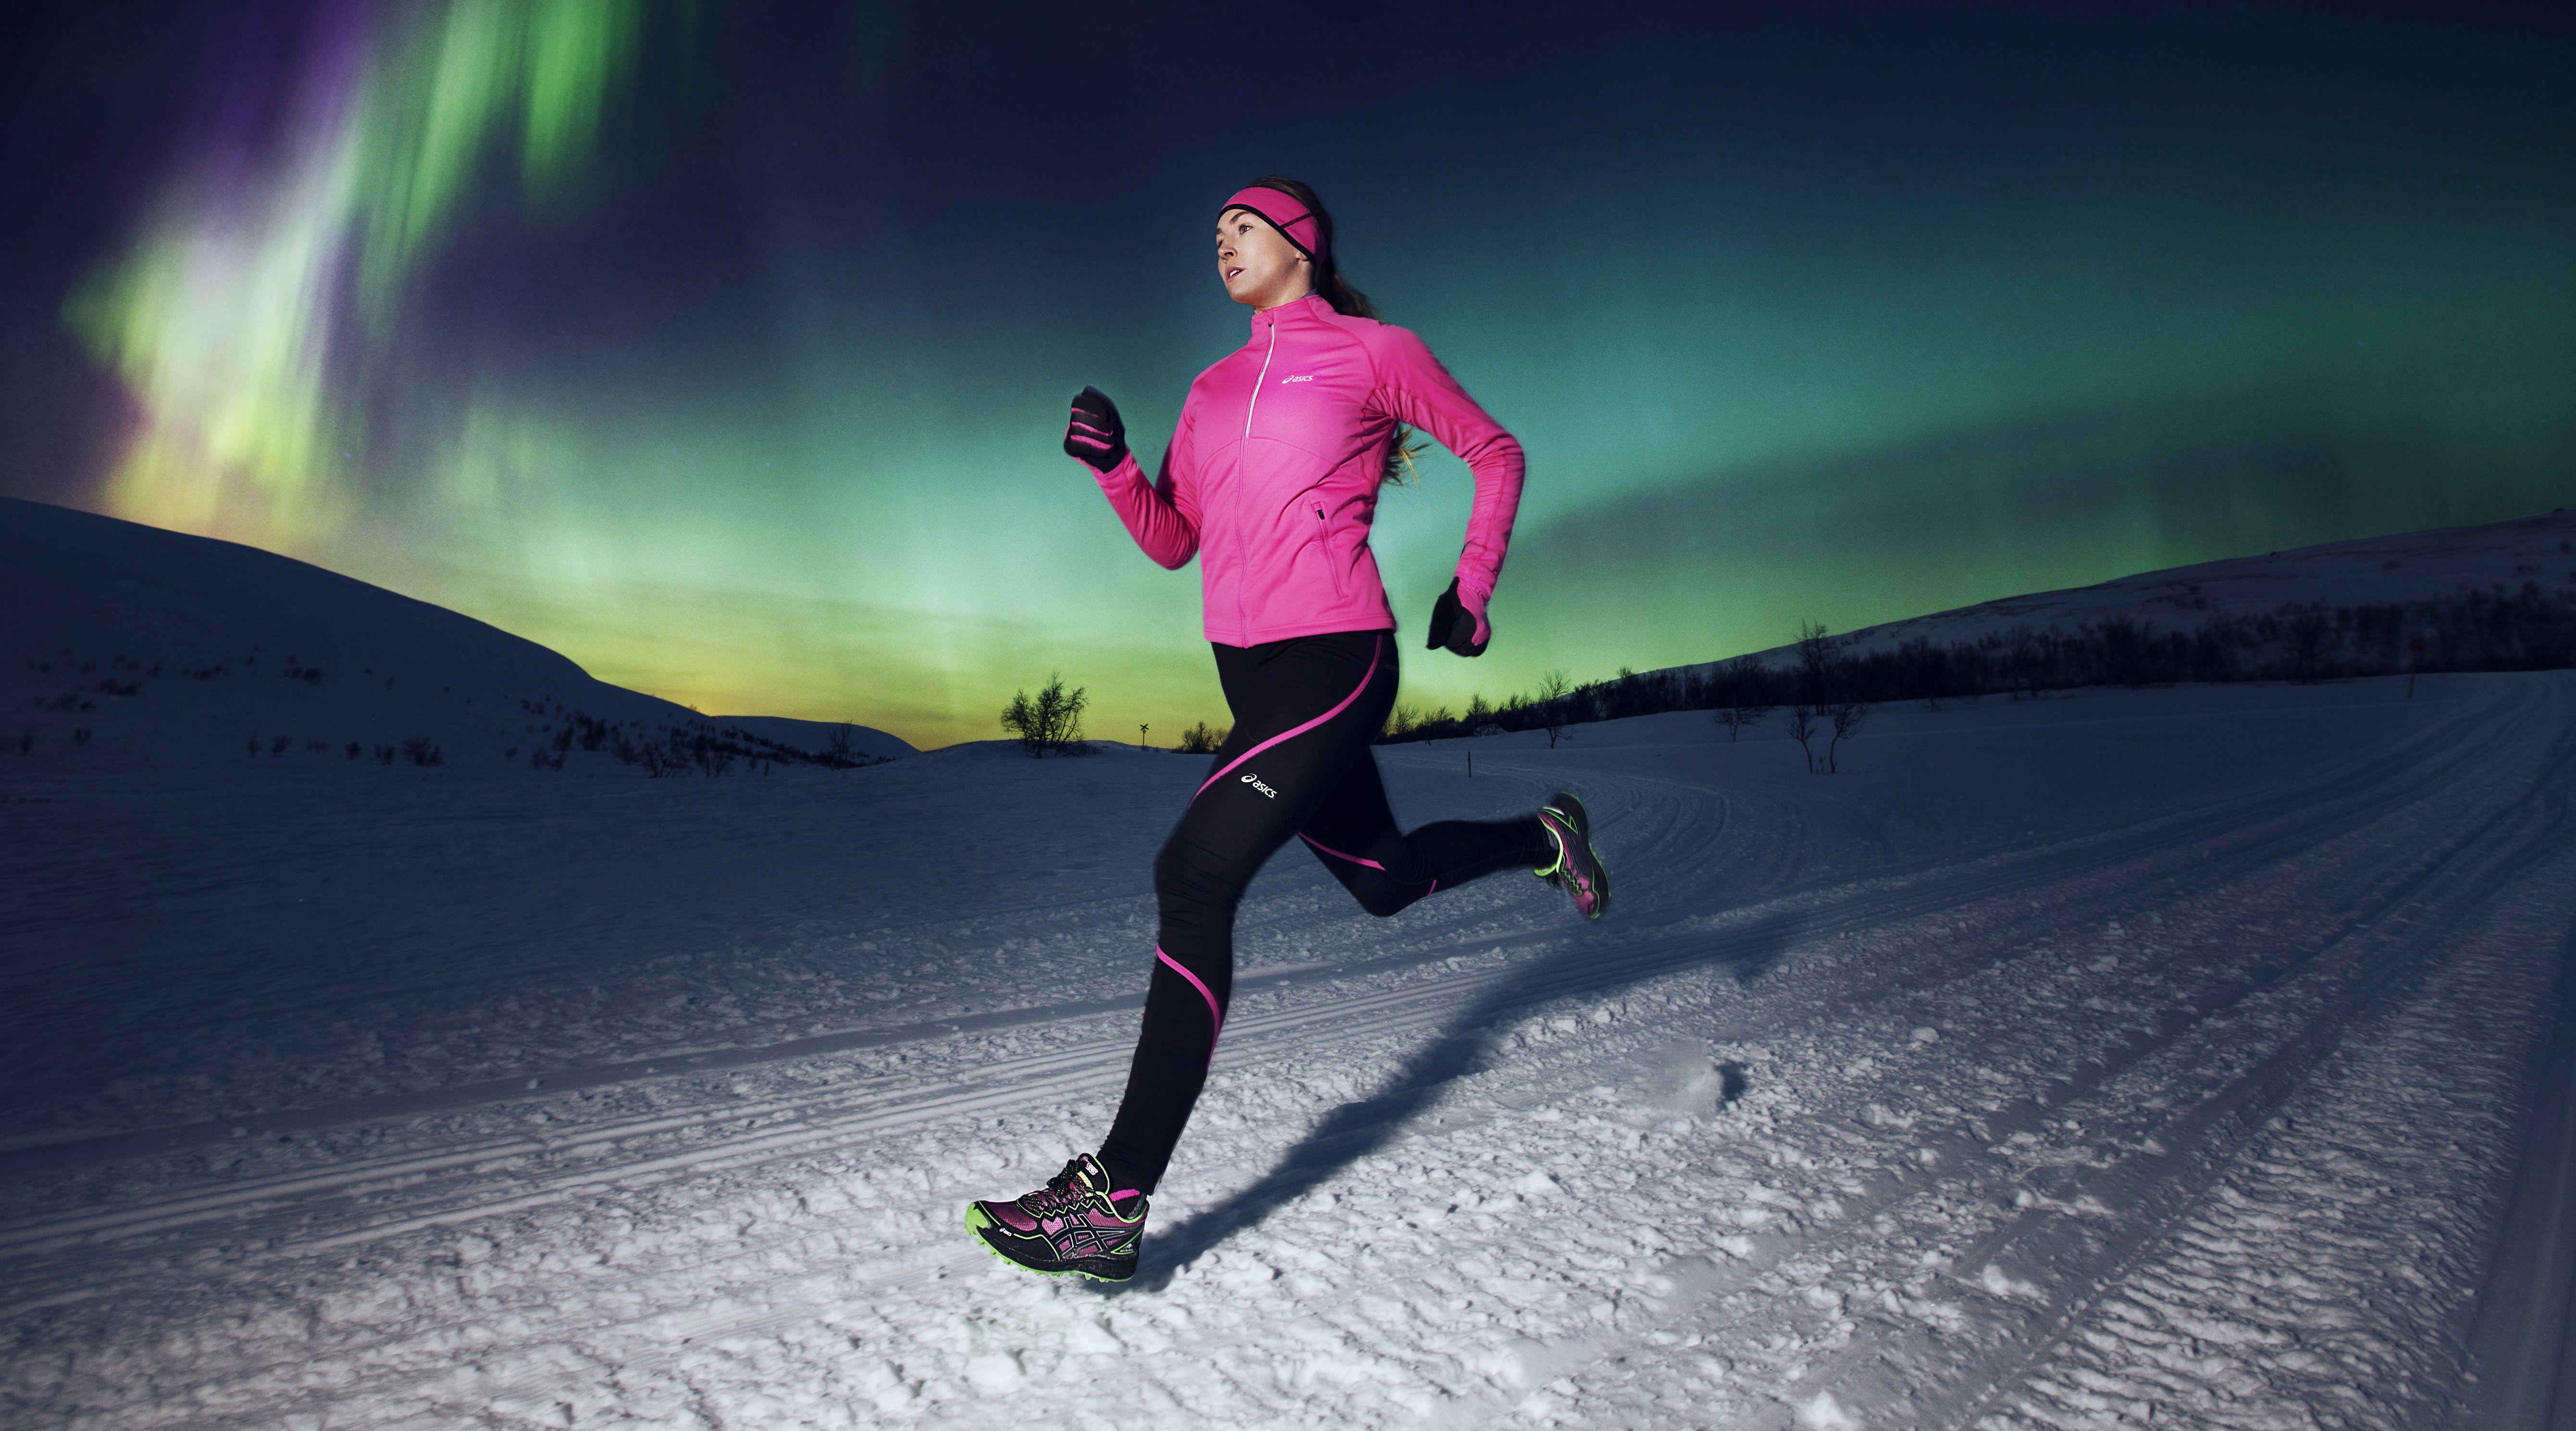 Download Wallpaper nature, sport, winter, pink dress, running